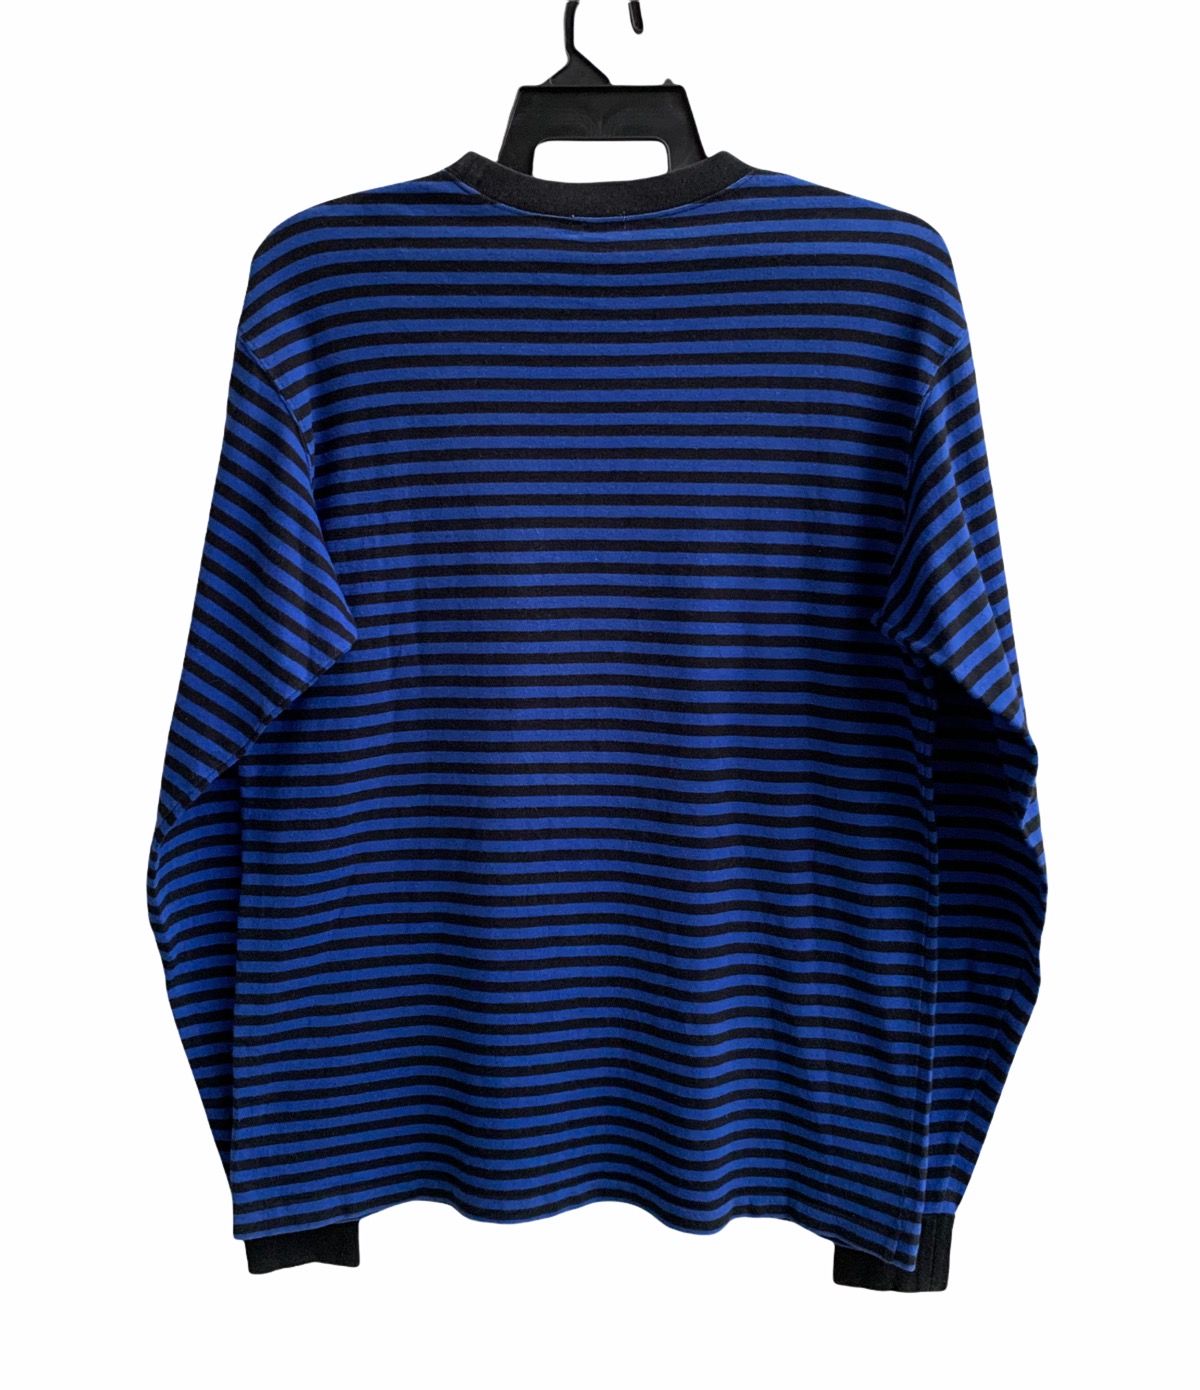 Goodenough Vinateg Good Enough Blue Striped Long Sleeve T-shirts Size US L / EU 52-54 / 3 - 4 Thumbnail